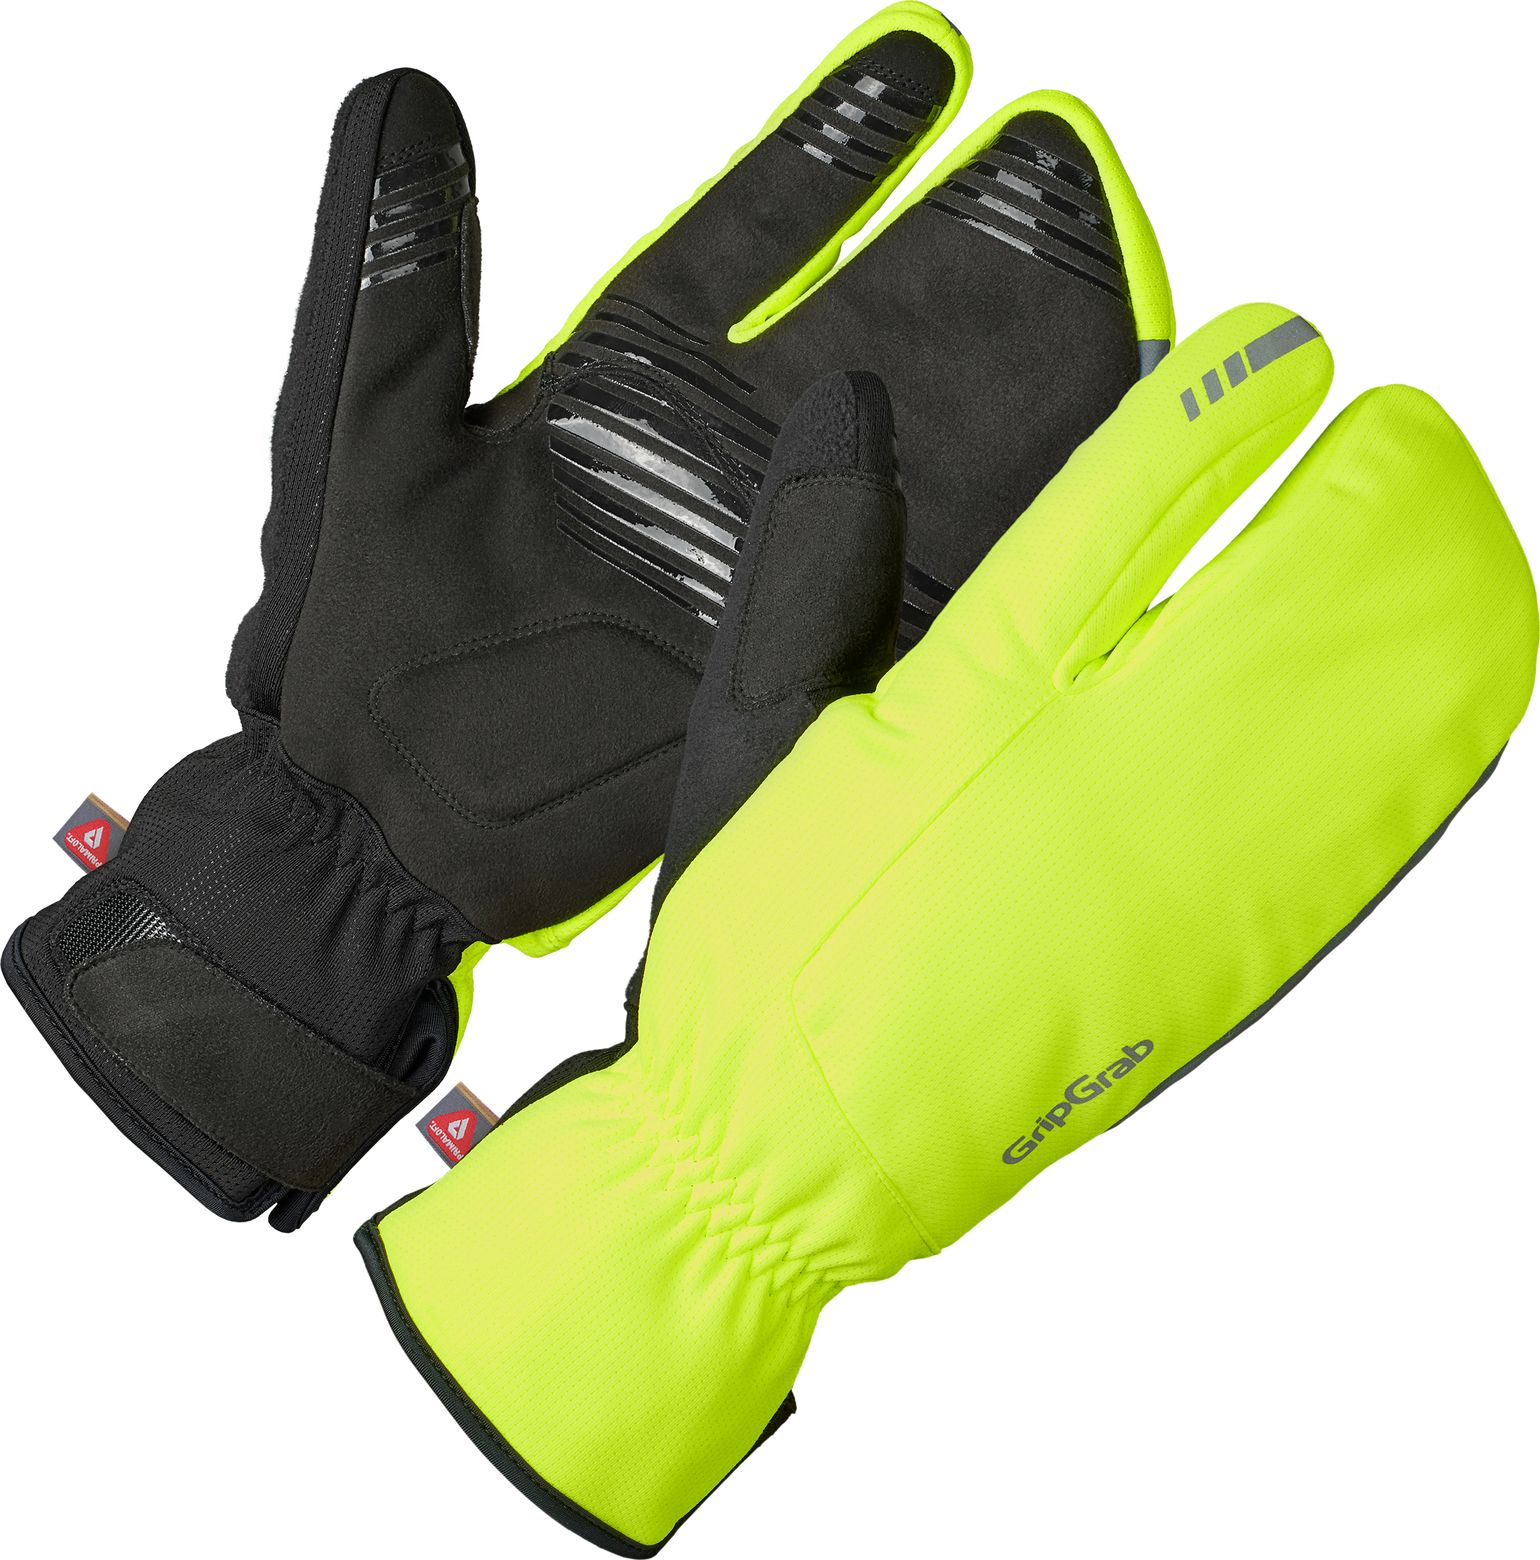 Nordic 2 Windproof Deep Winter Lobster Gloves Yellow Hi-Vis